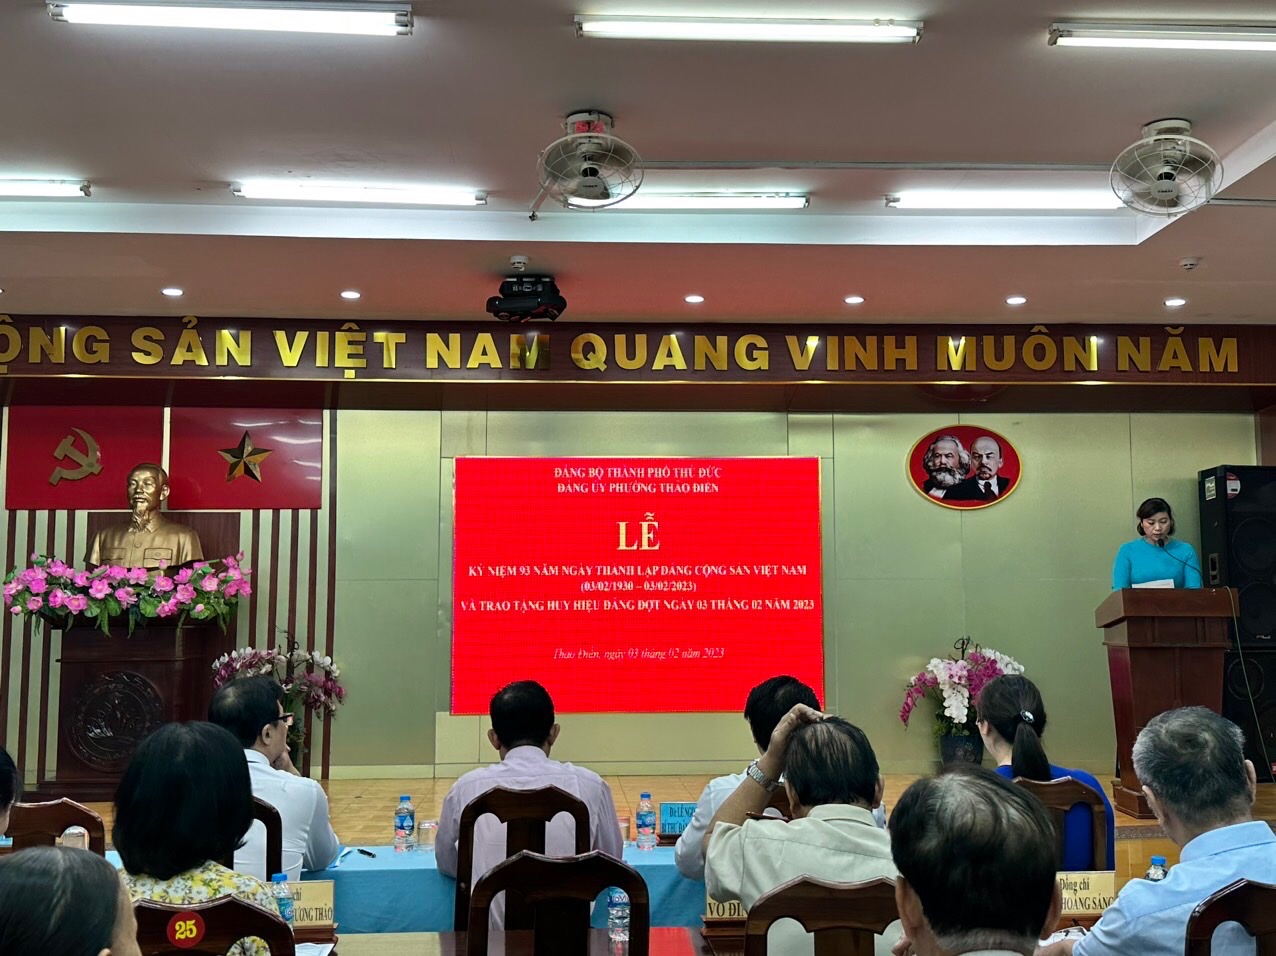 Lễ kỷ niệm 93 năm Ngày thành lập Đảng Cộng sản Việt Nam  (3/2/1930-3/2/2023) và trao tặng huy hiệu Đảng đợt 03 tháng 02 năm 2023